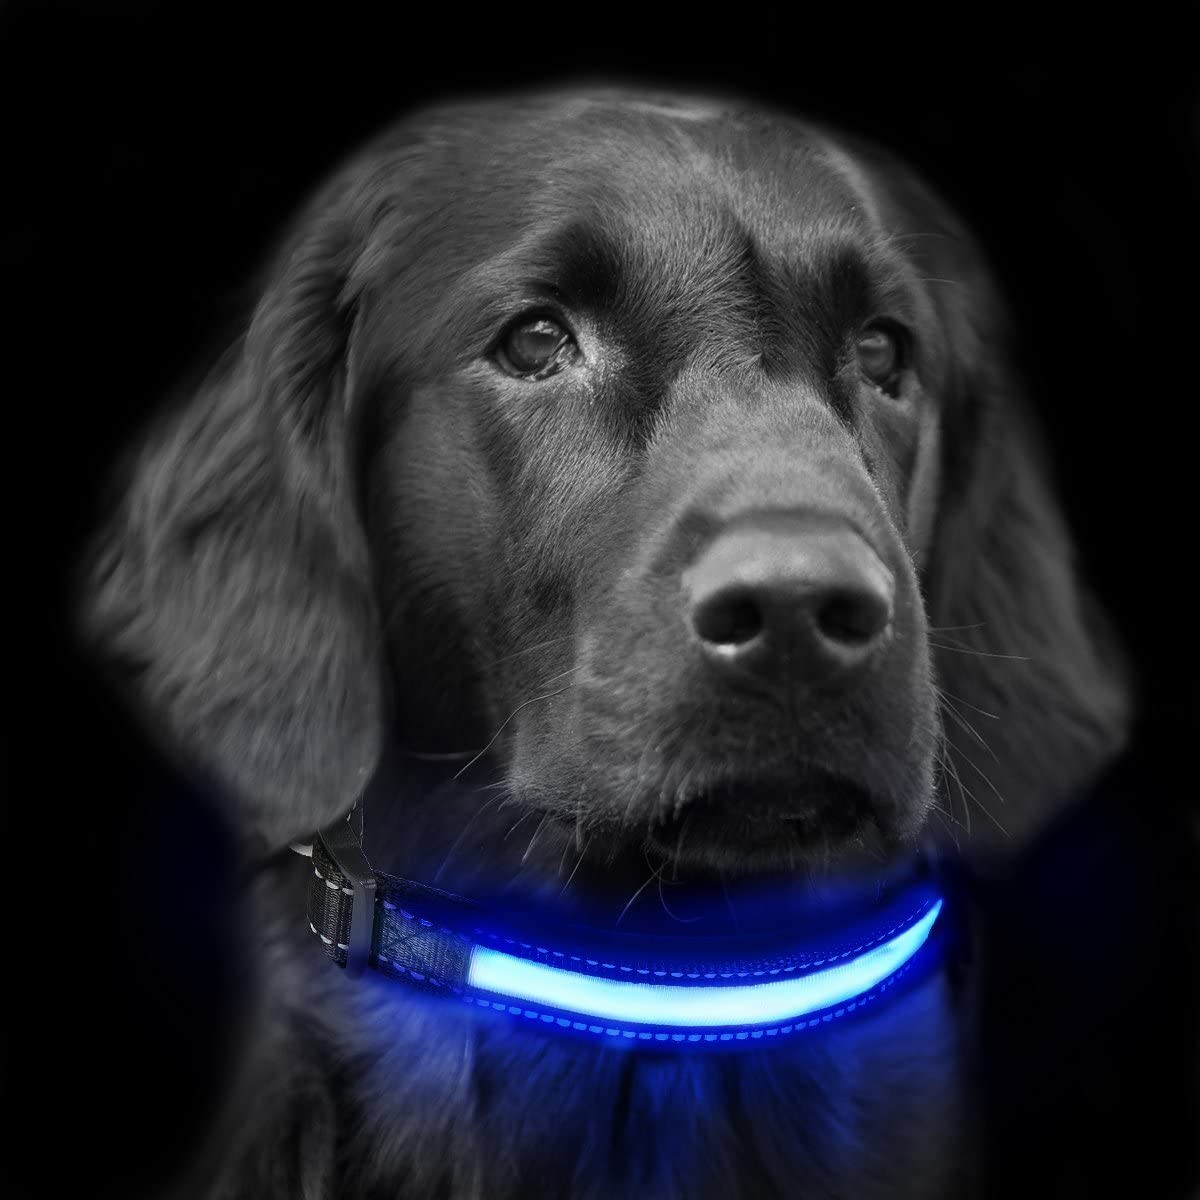  Collar de Perro led, LaiXin Collar para Perro Ajustable de luces LED Ajustable y Reflectante, Impermeable Recargable por USB para Perro Seguridad, Grandes Perro, Rojo, L 